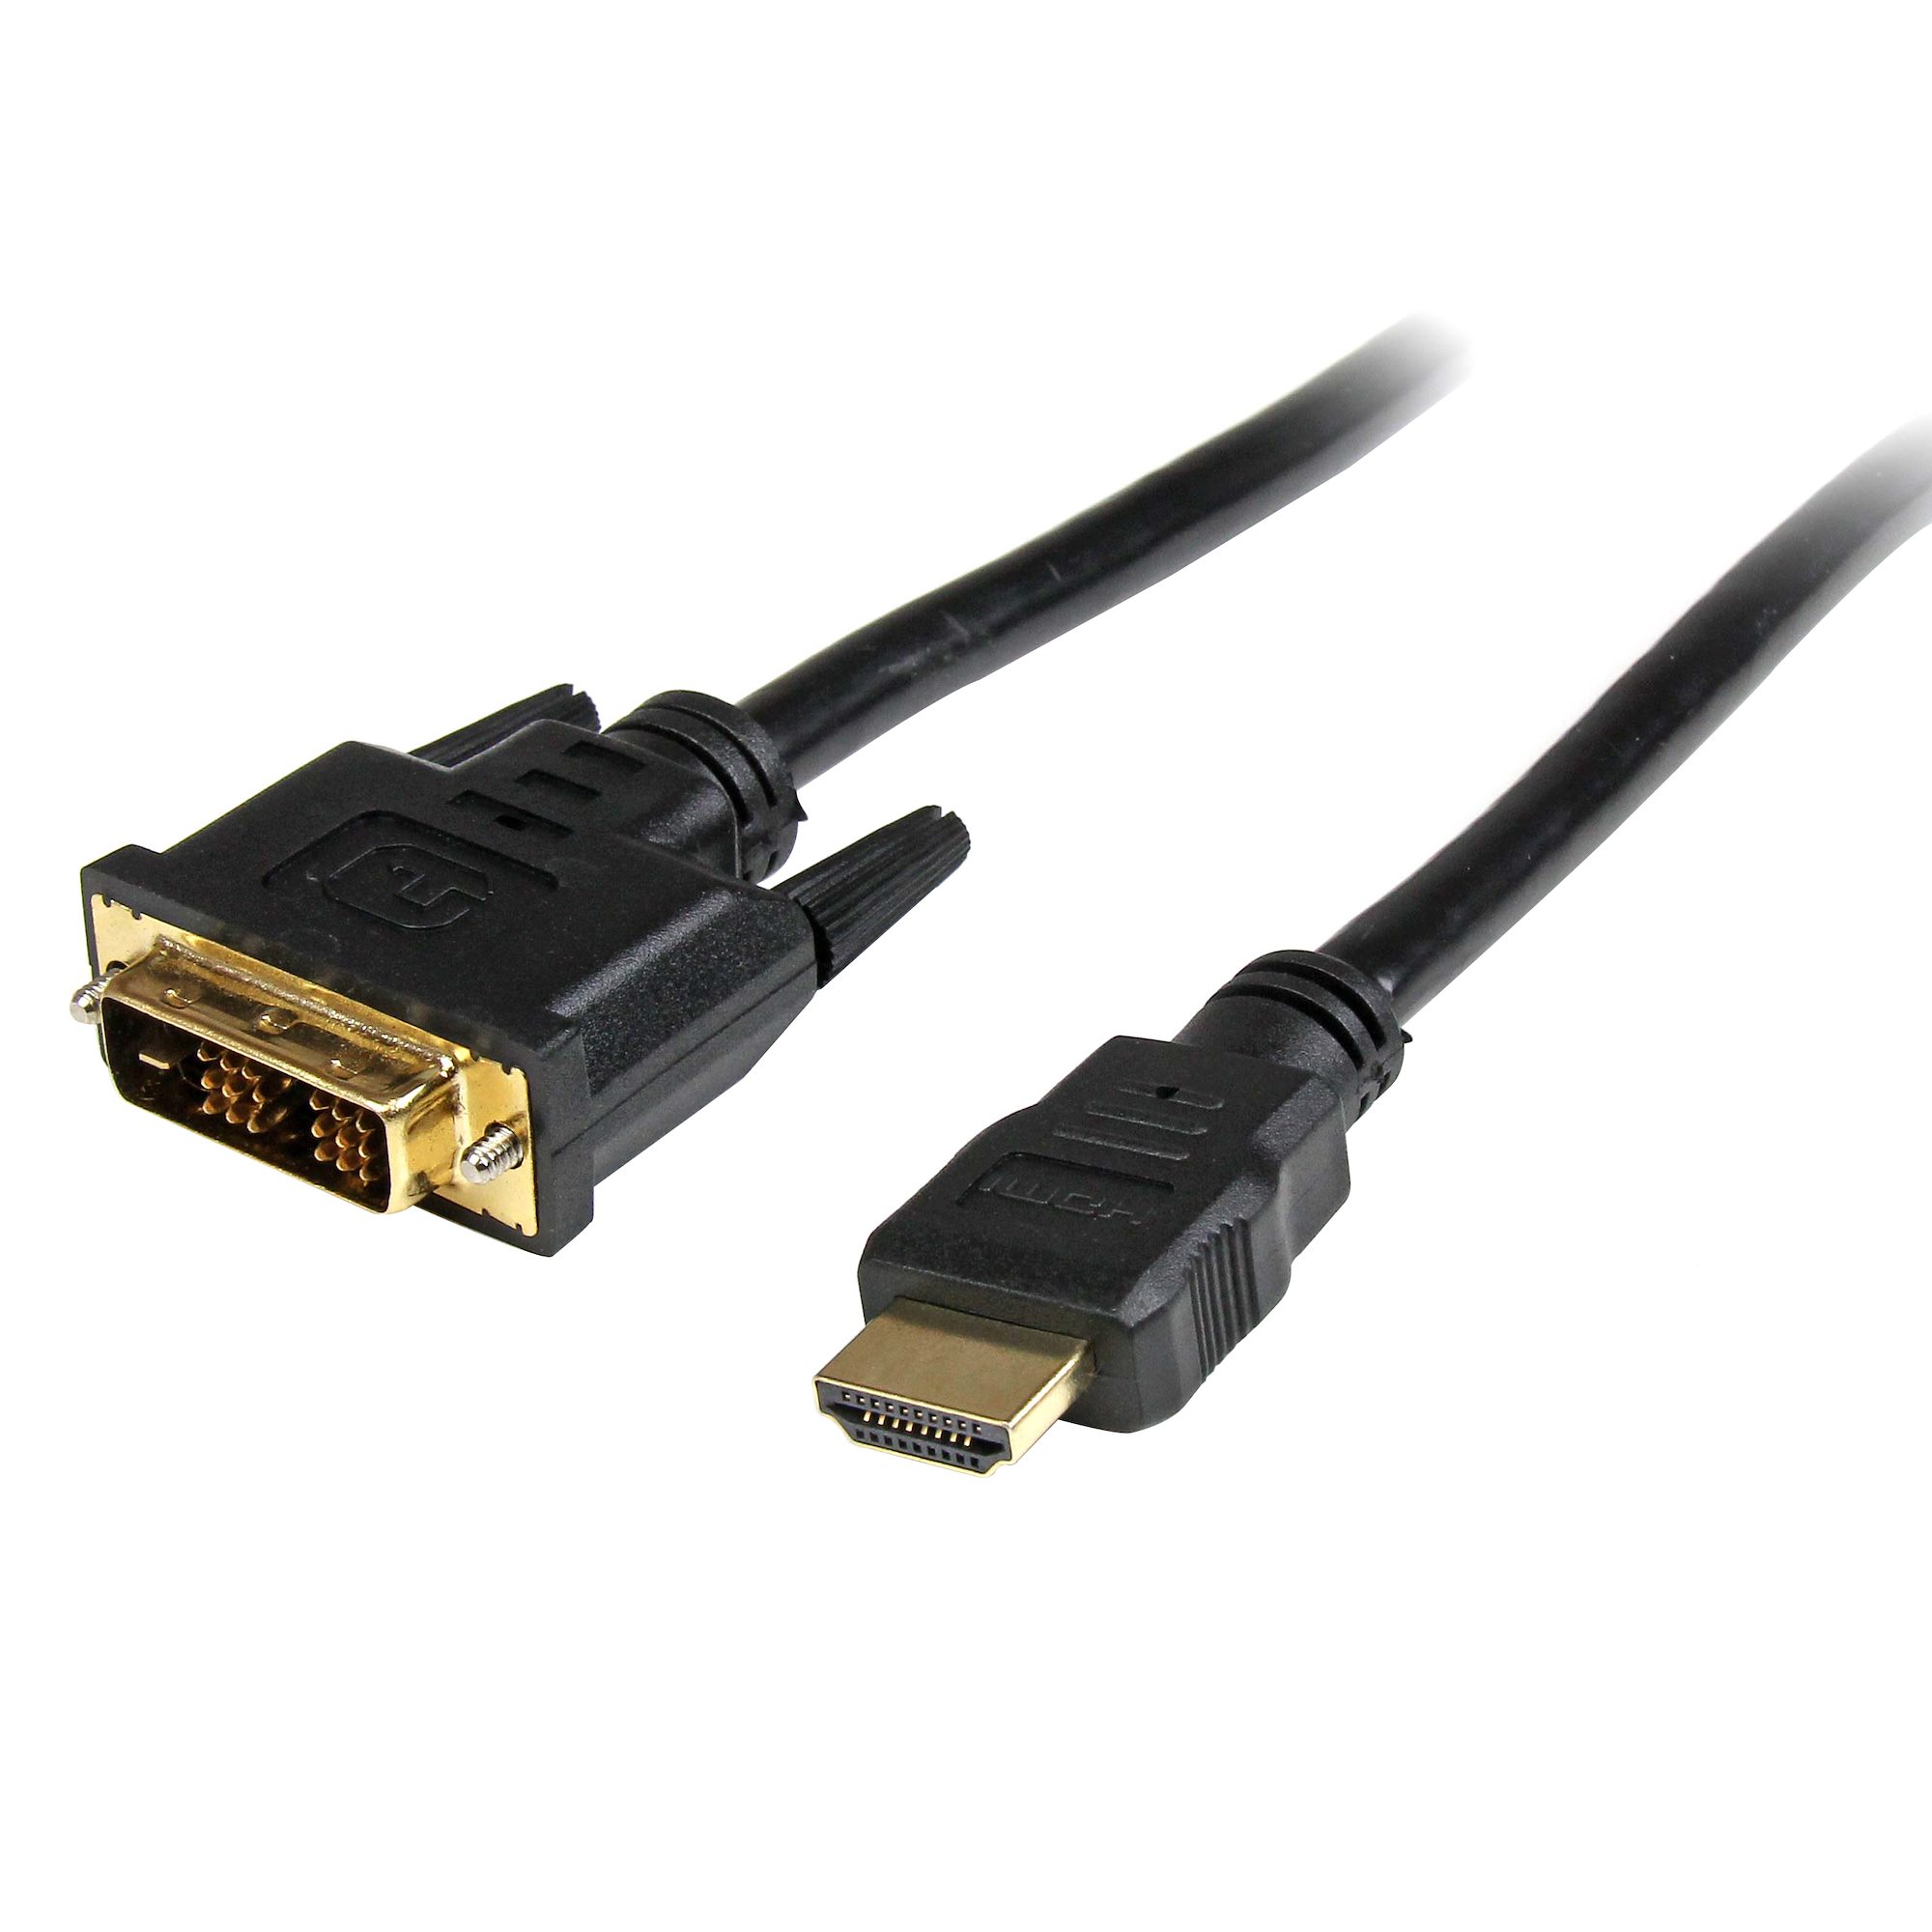 Connettore HDMI/DVI Adattatore Cavo 2 M 19 Pol 18+1 spina HDMI > DVI-D 